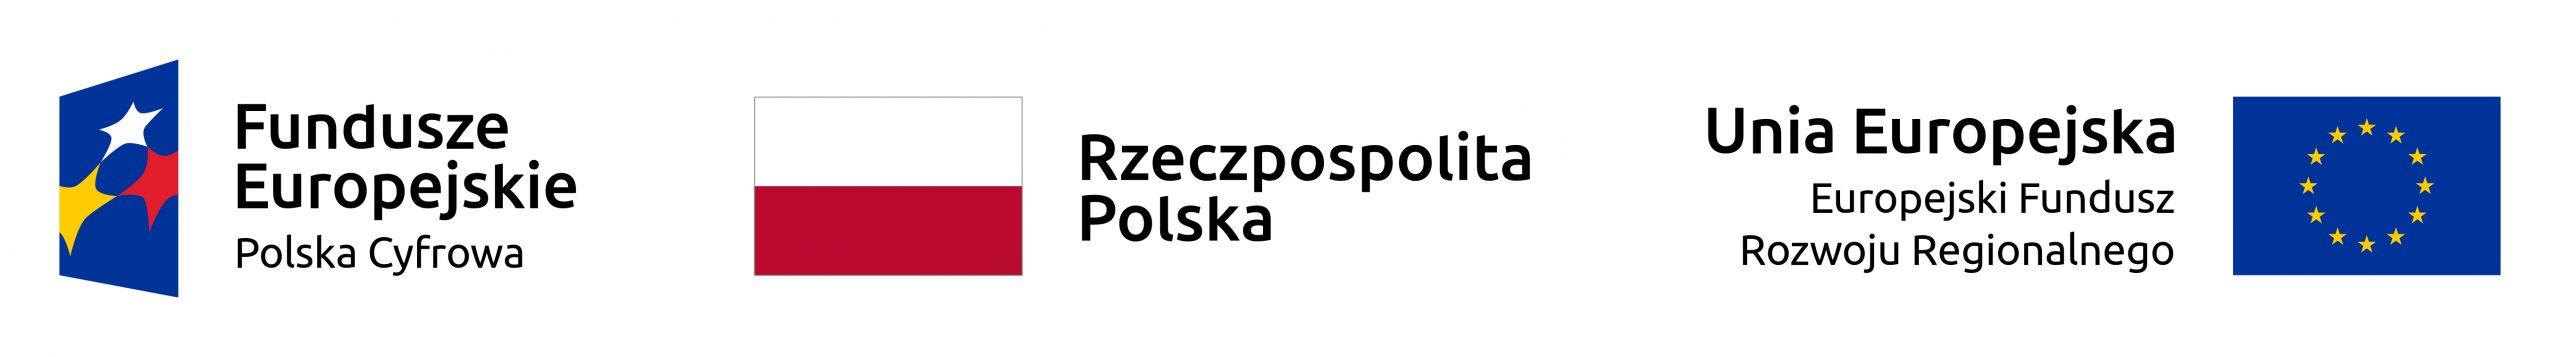 Logotyp "Fundusze Europejskie Polska Cyfrowa", Flaga biało-czerwona wraz w napisem "Rzeczpospolita Polska" oraz flaga Unii Europejskiej z opisem "Unia Europejska. Europejski Fundusz Rozwoju Regionalnego"